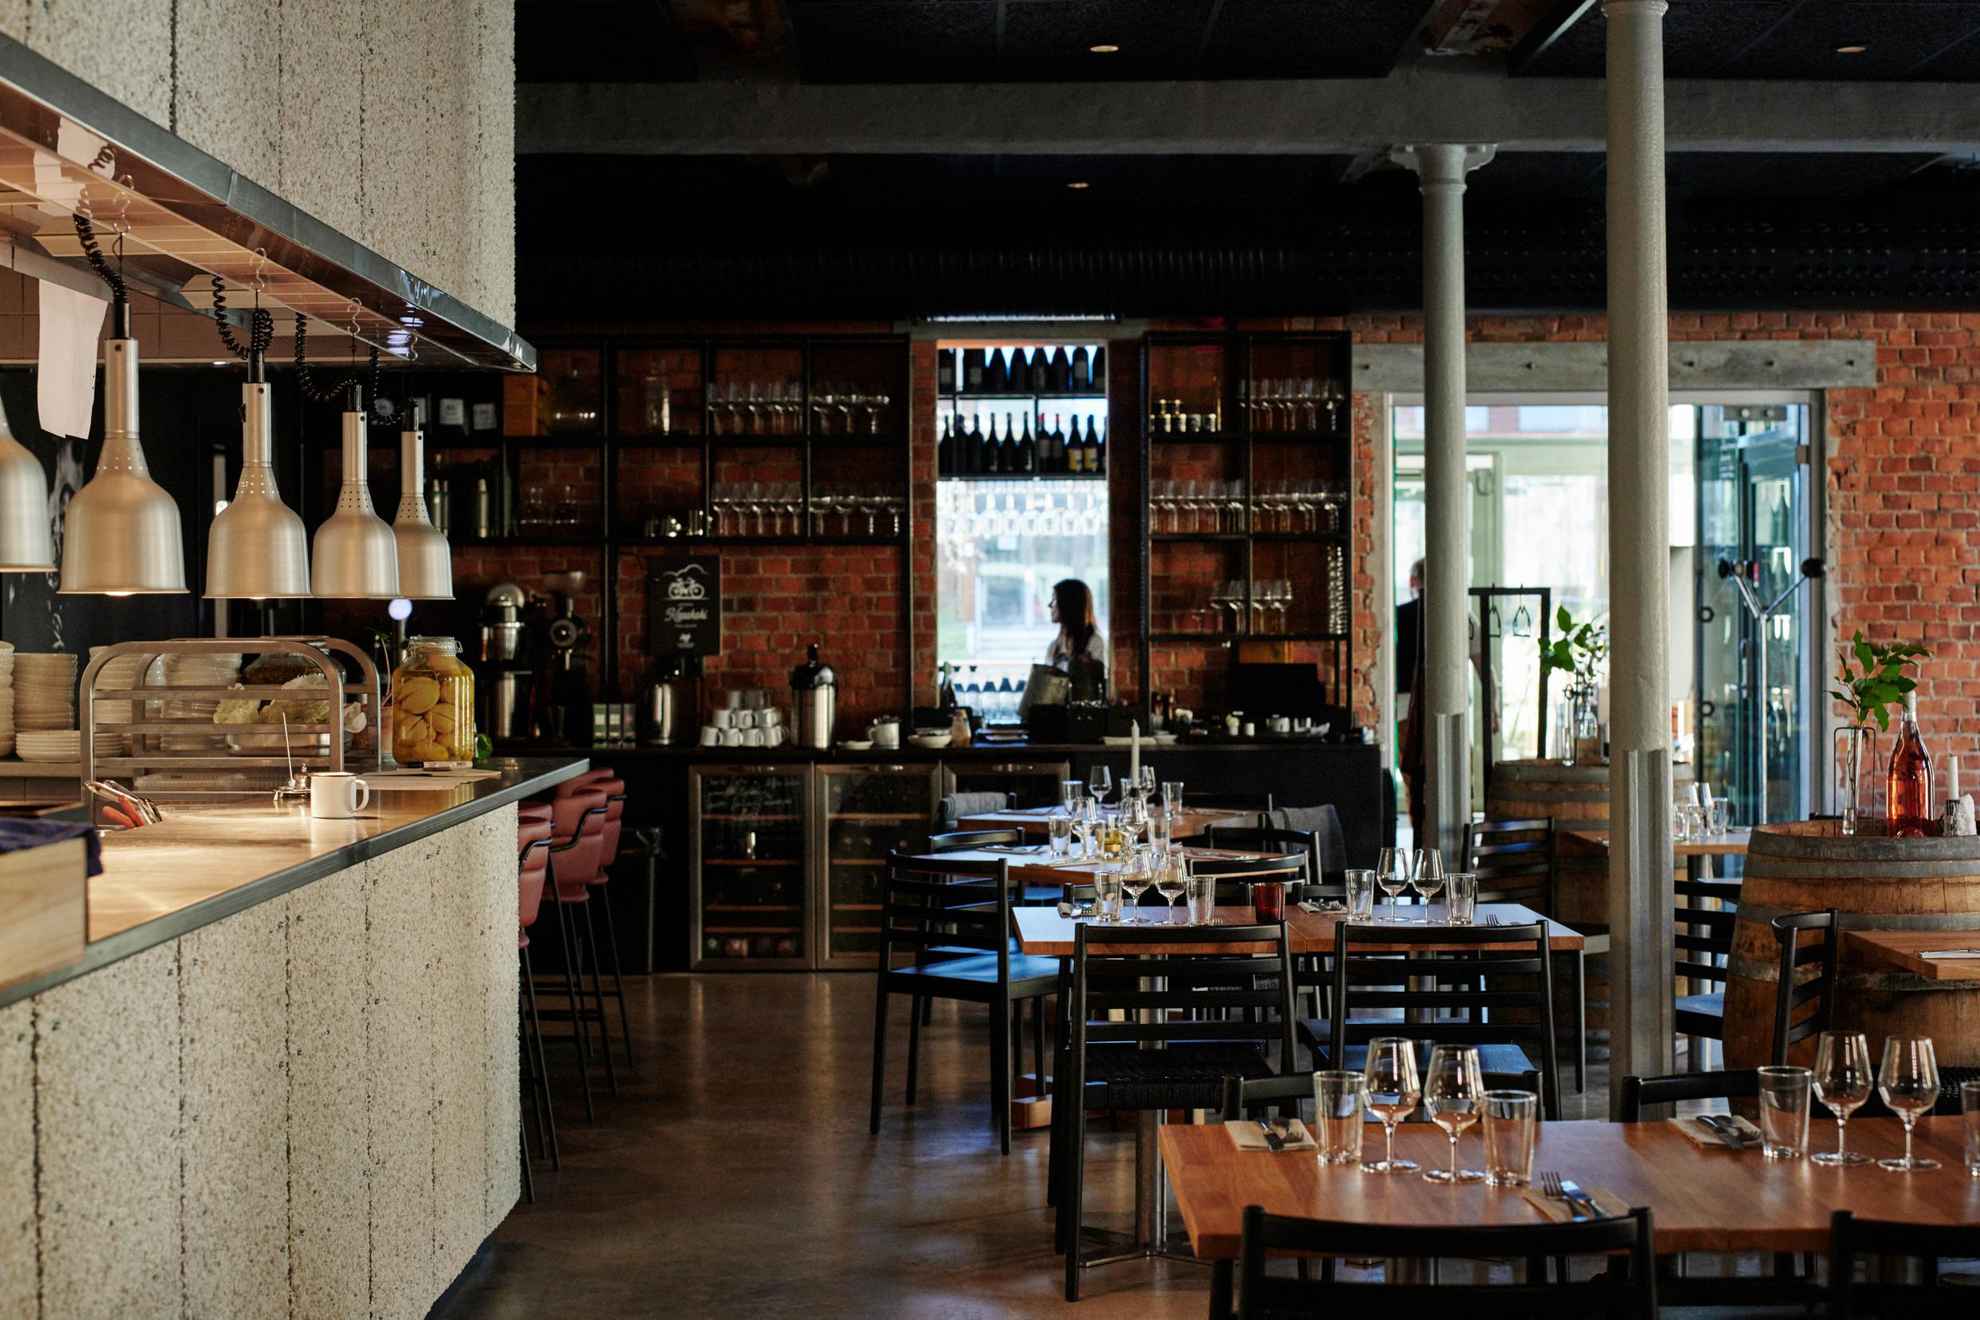 Interieur van een wijnrestaurant met meerdere tafels en links een bar.